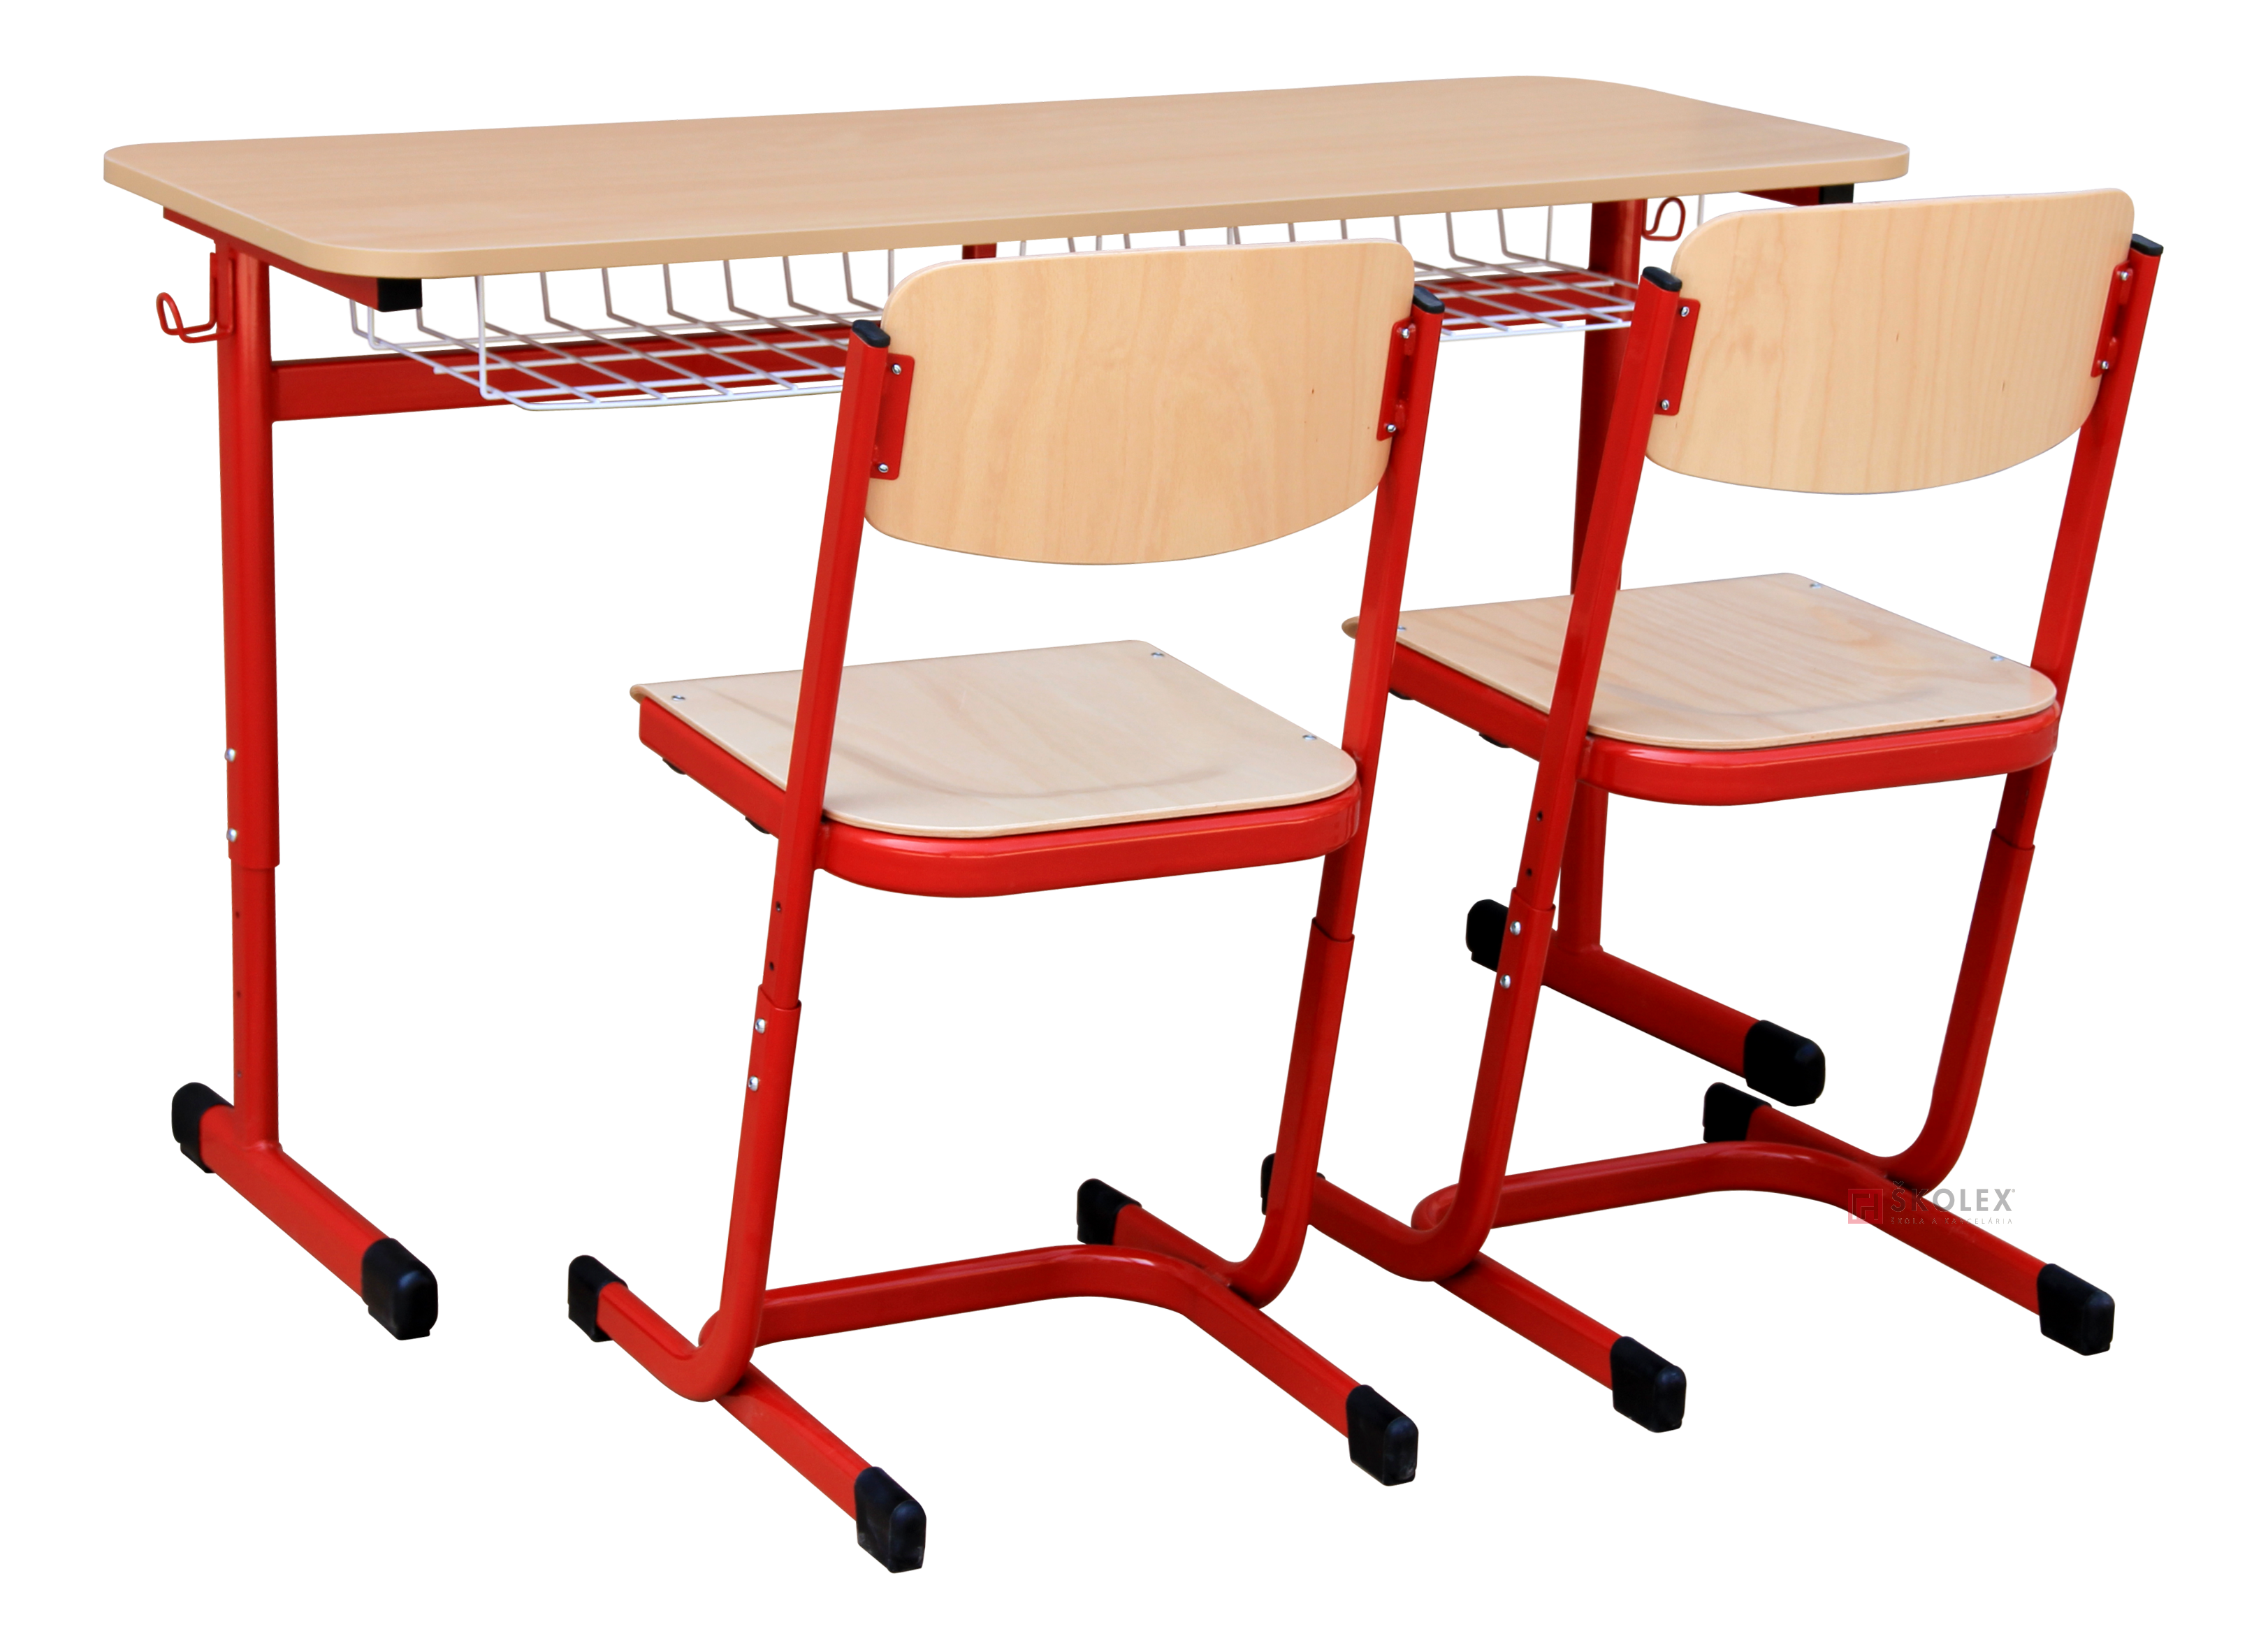 Витал школьная мебель. Ученическая мебель. Школьная мебель для детей инвалидов. Школьная мебель высокого качества-. Финская Школьная мебель.